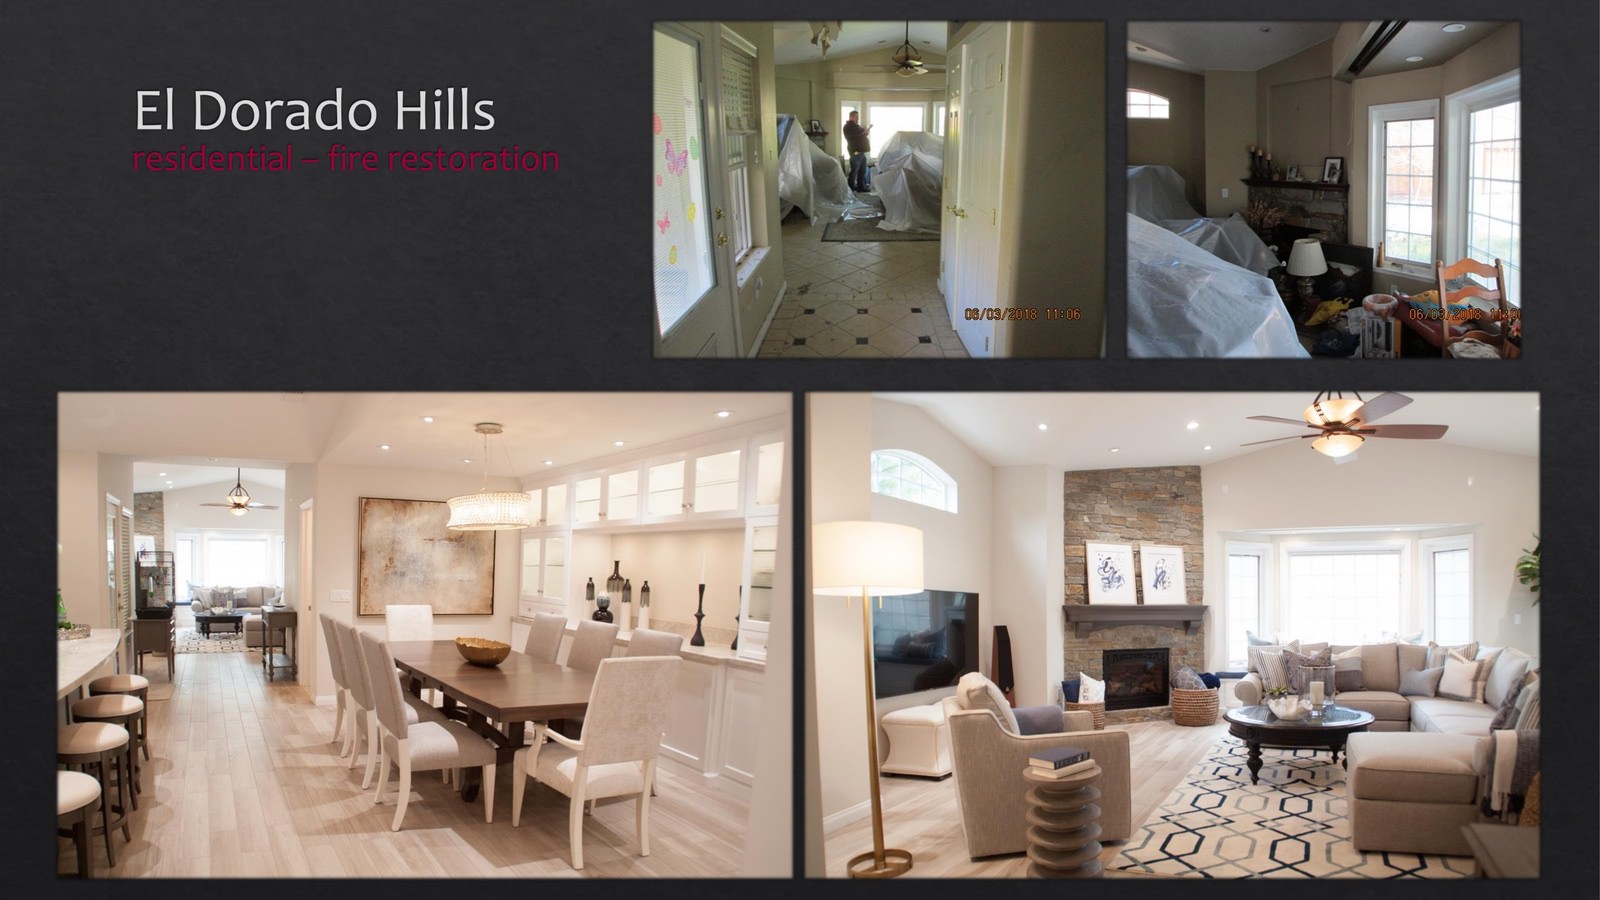 El Dorado Hills Residential fire restoration - kitchen and living room - lightbox